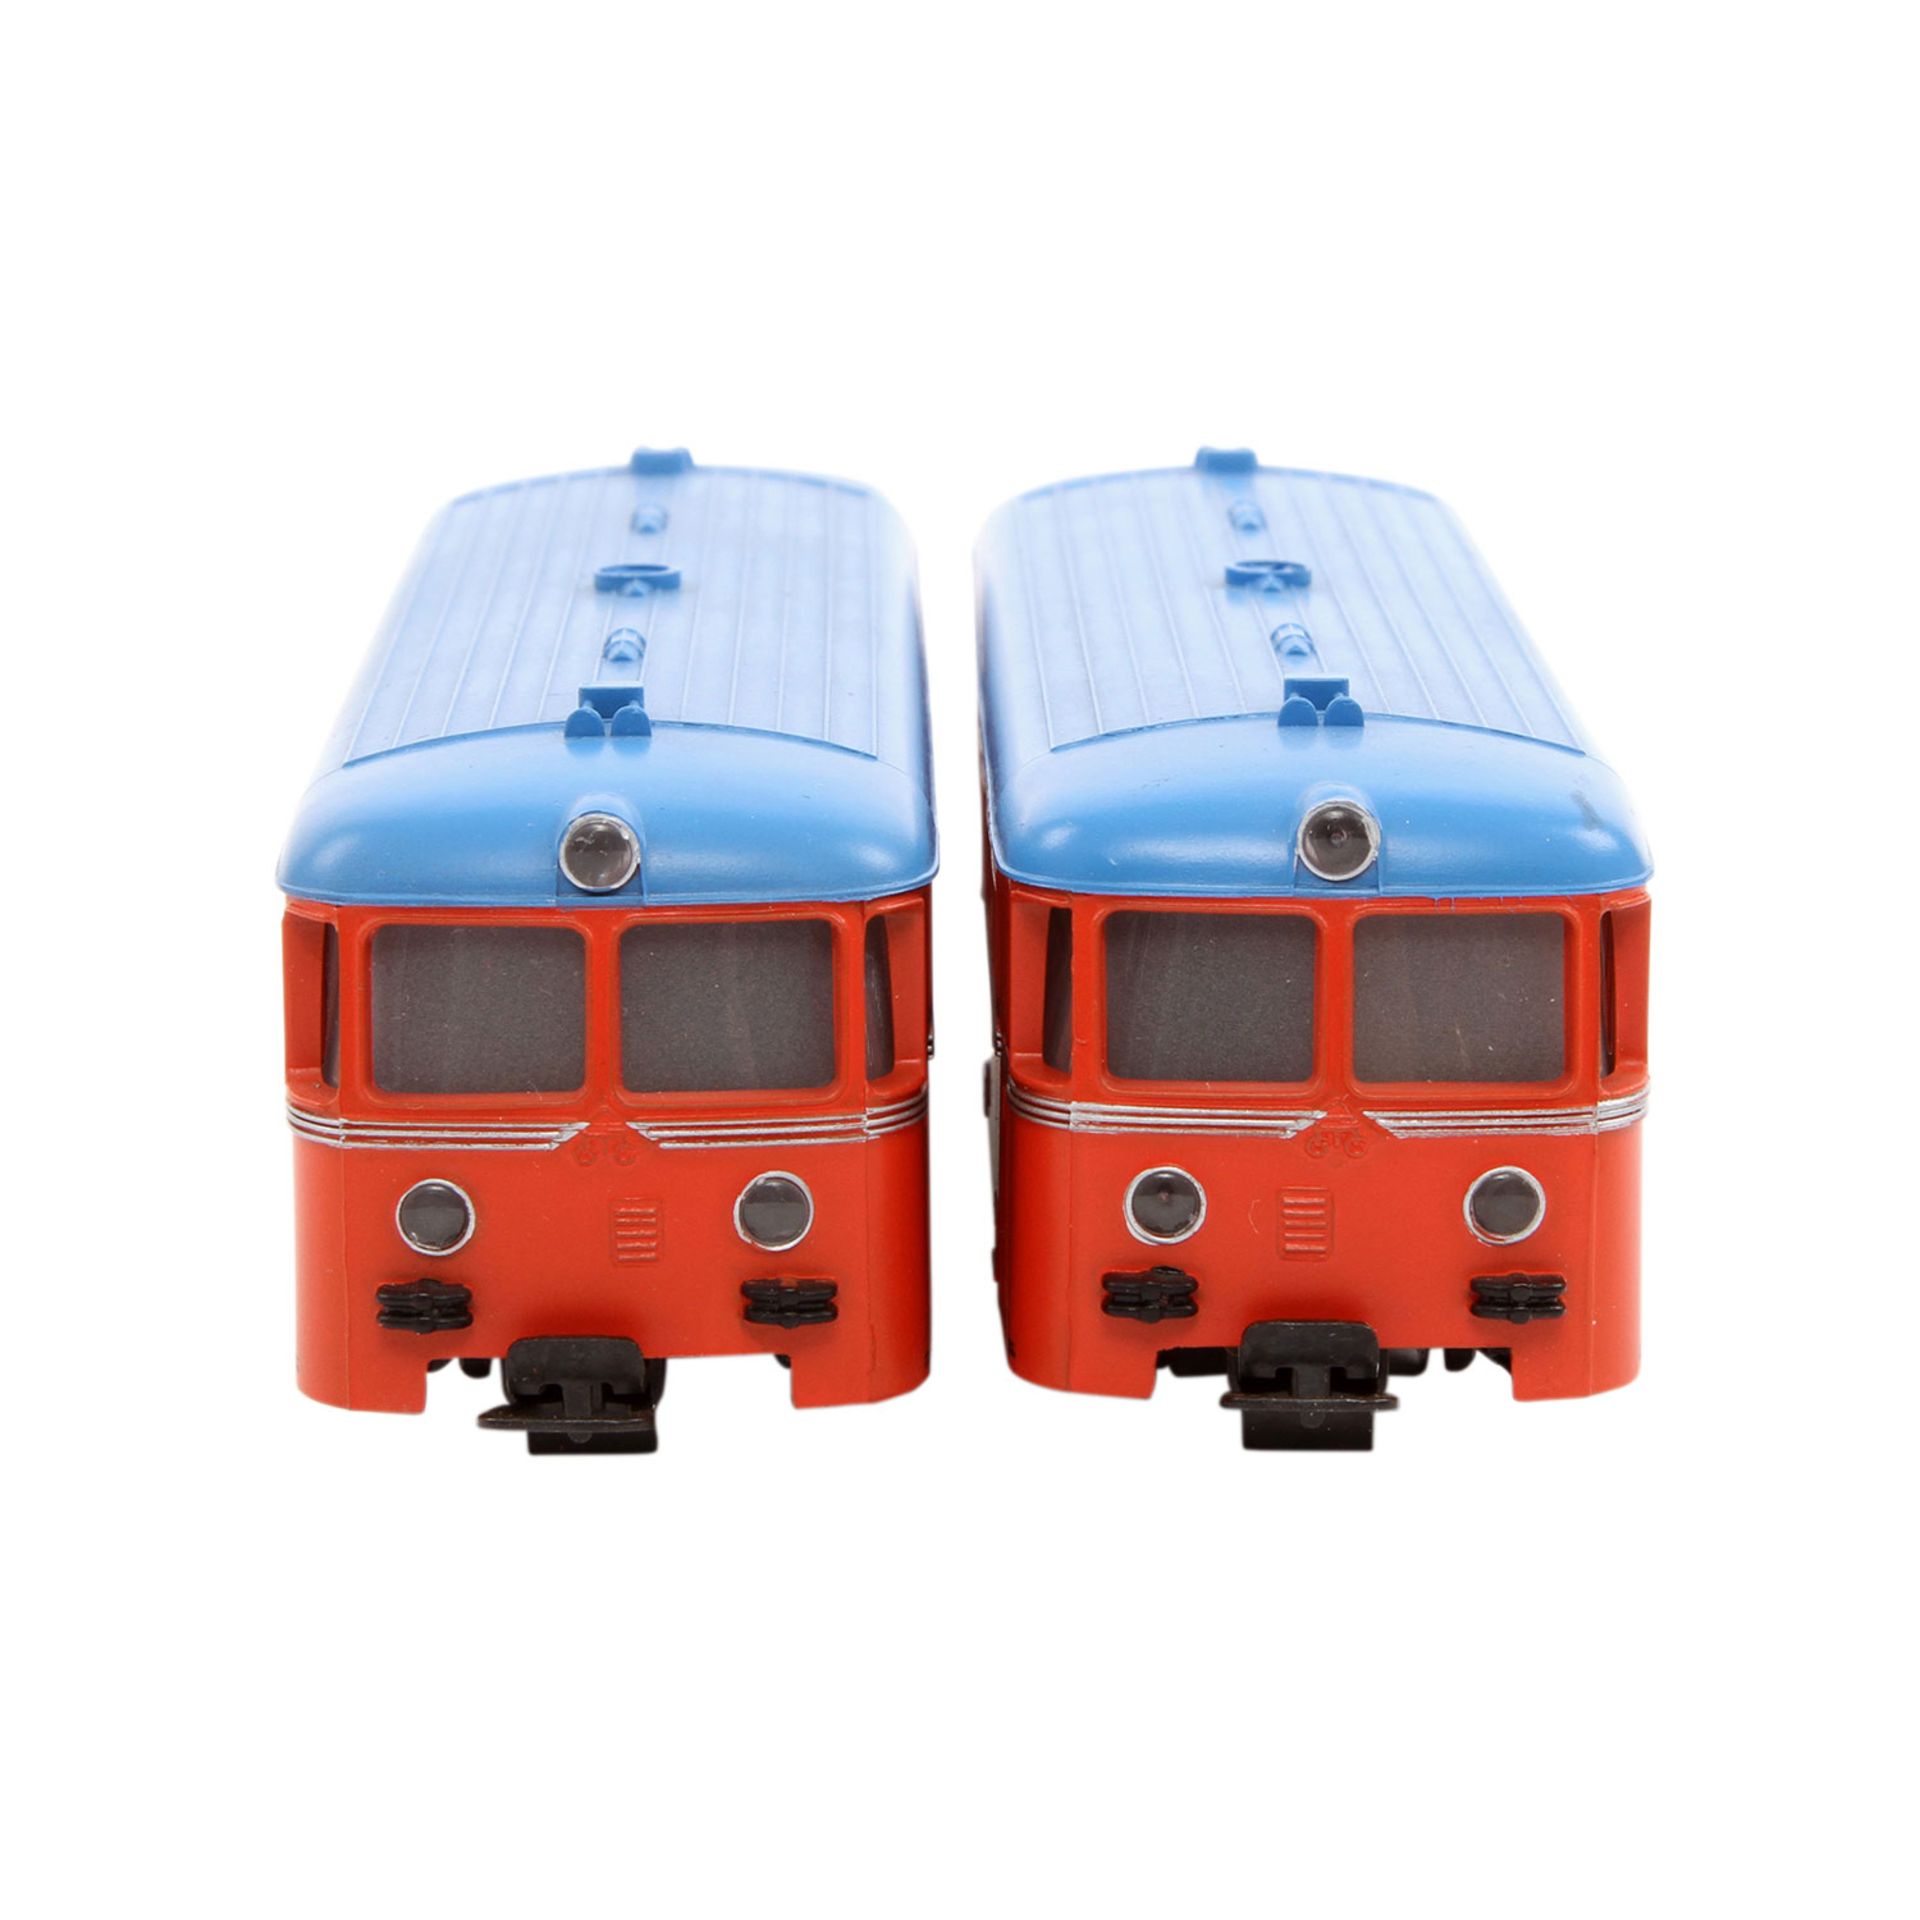 MÄRKLIN Schienenbus mit Beiwagen 3140, Spur H0, Kunststoff-Gehäuse, rot m. blauem Dach, VT 21 und VS - Bild 4 aus 8